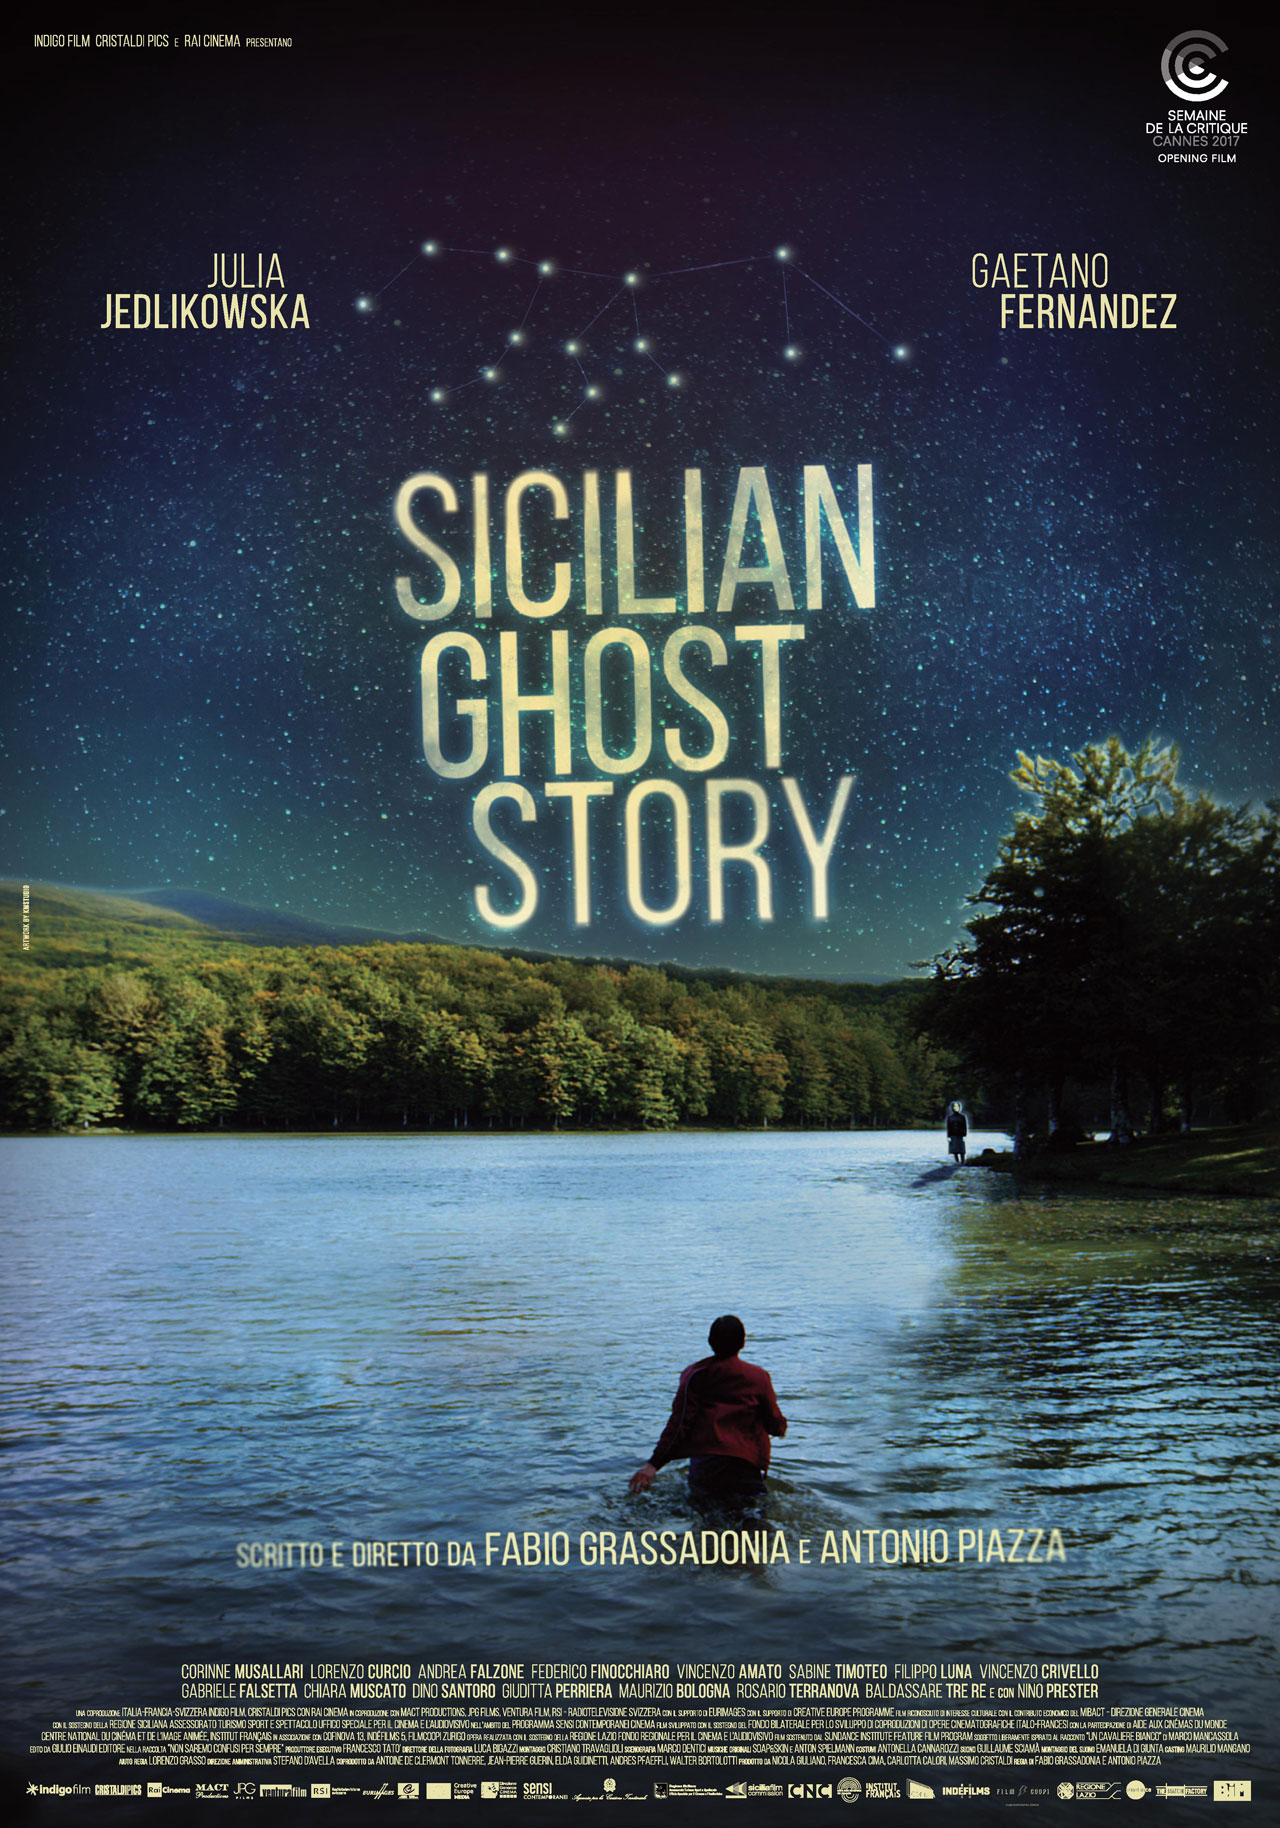  Dall'articolo: Sicilian Ghost Story, il poster del film selezionato a Cannes.